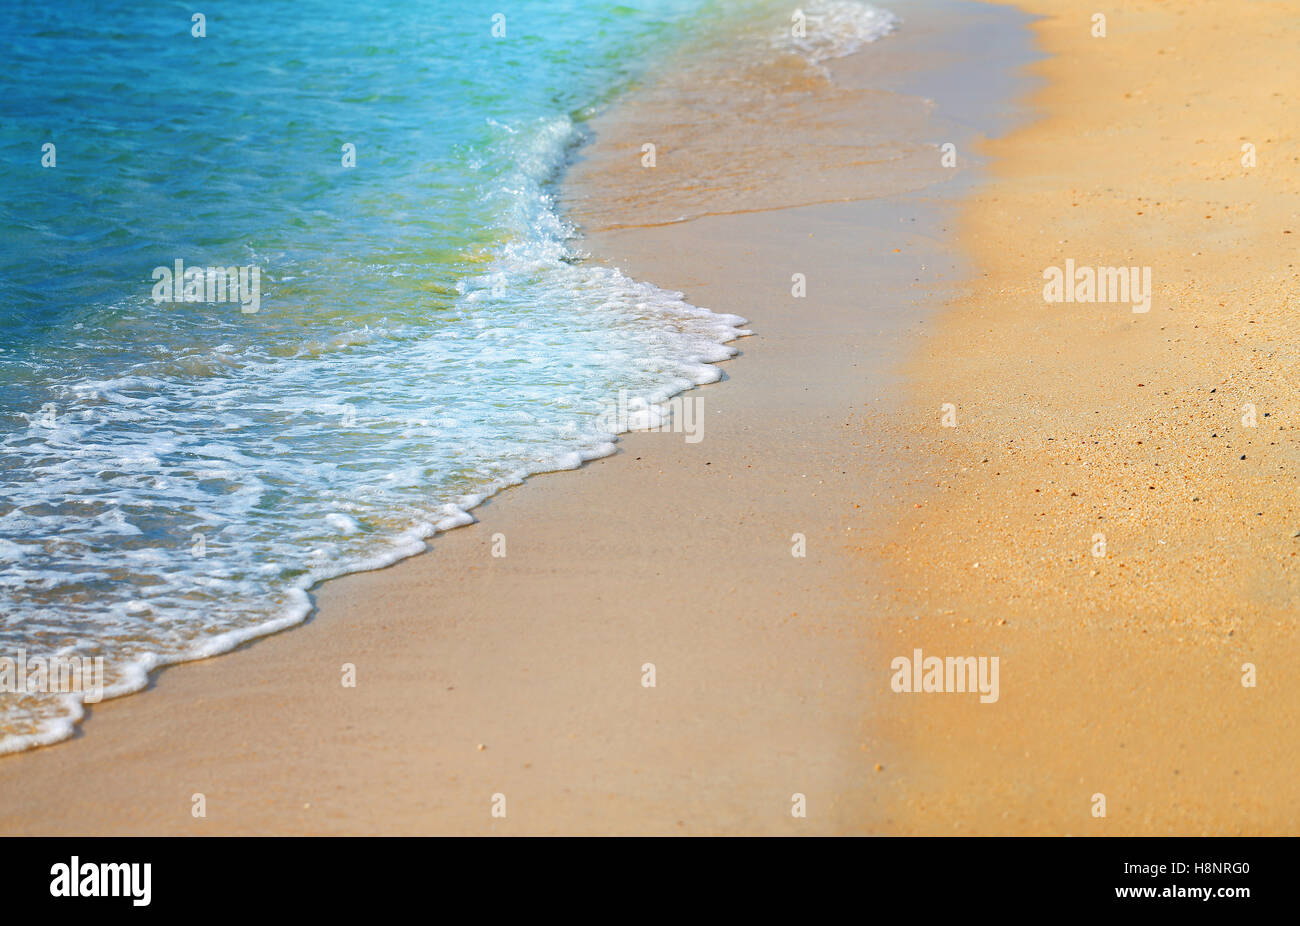 Onde bellissime sul Mar Giallo sabbia fotografato in close-up Foto Stock